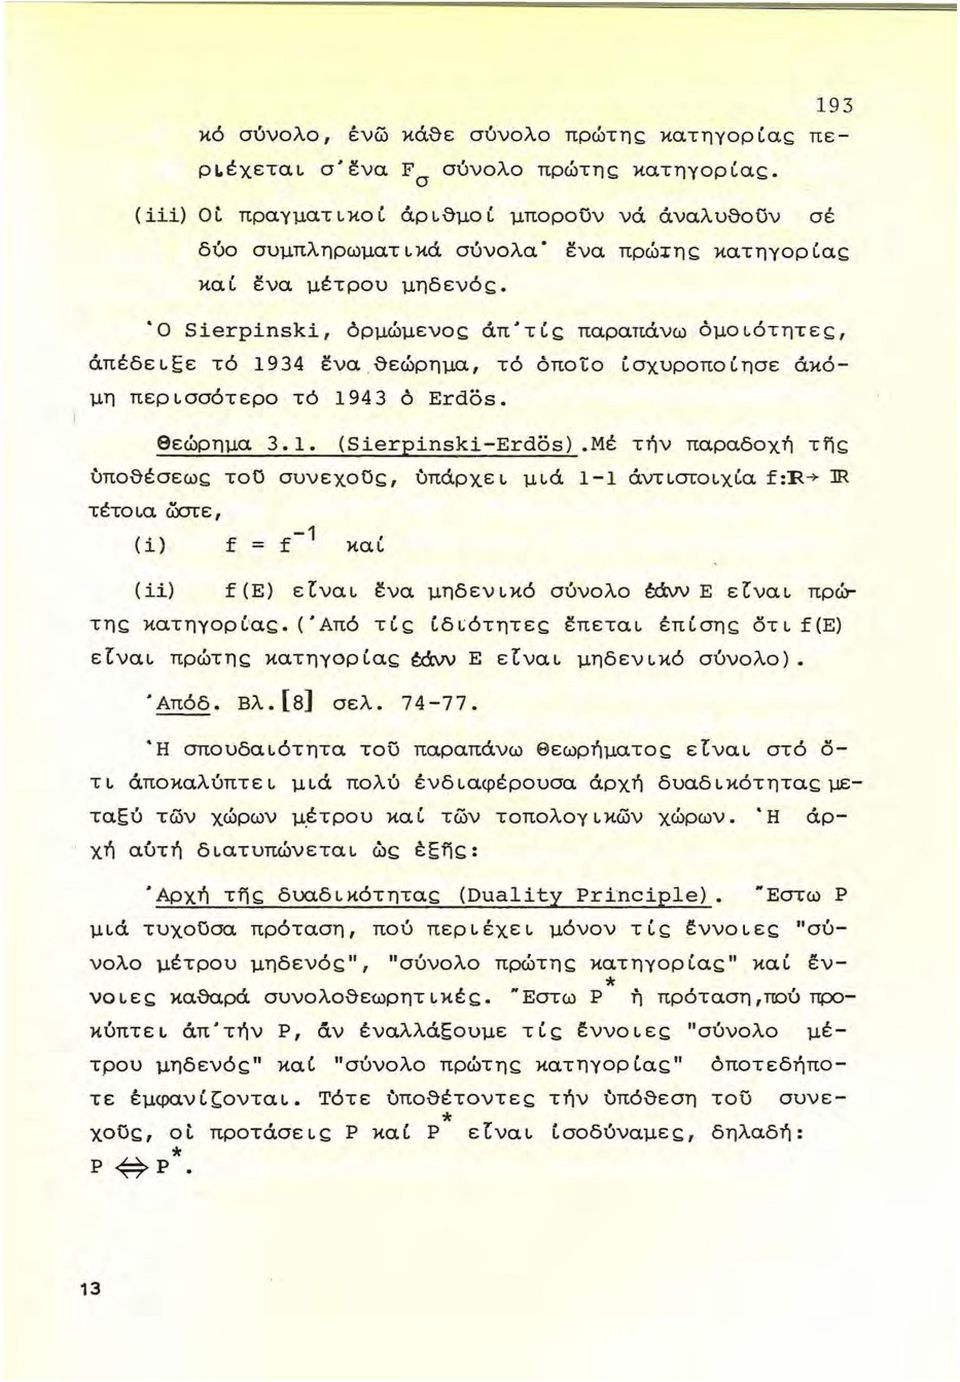 Ό Sierpinski, όρμώμενο~ άπ'τί~ παραπάνω όμοιότητε~, άπέδειεε τό 1934 έ:να θεώρημα, τό όποίο ίσχυροποίησε άκόμη περισσότερο τό 1943 ό Erdos. θεώρημα 3.1. (Sierpinski-Erdos).